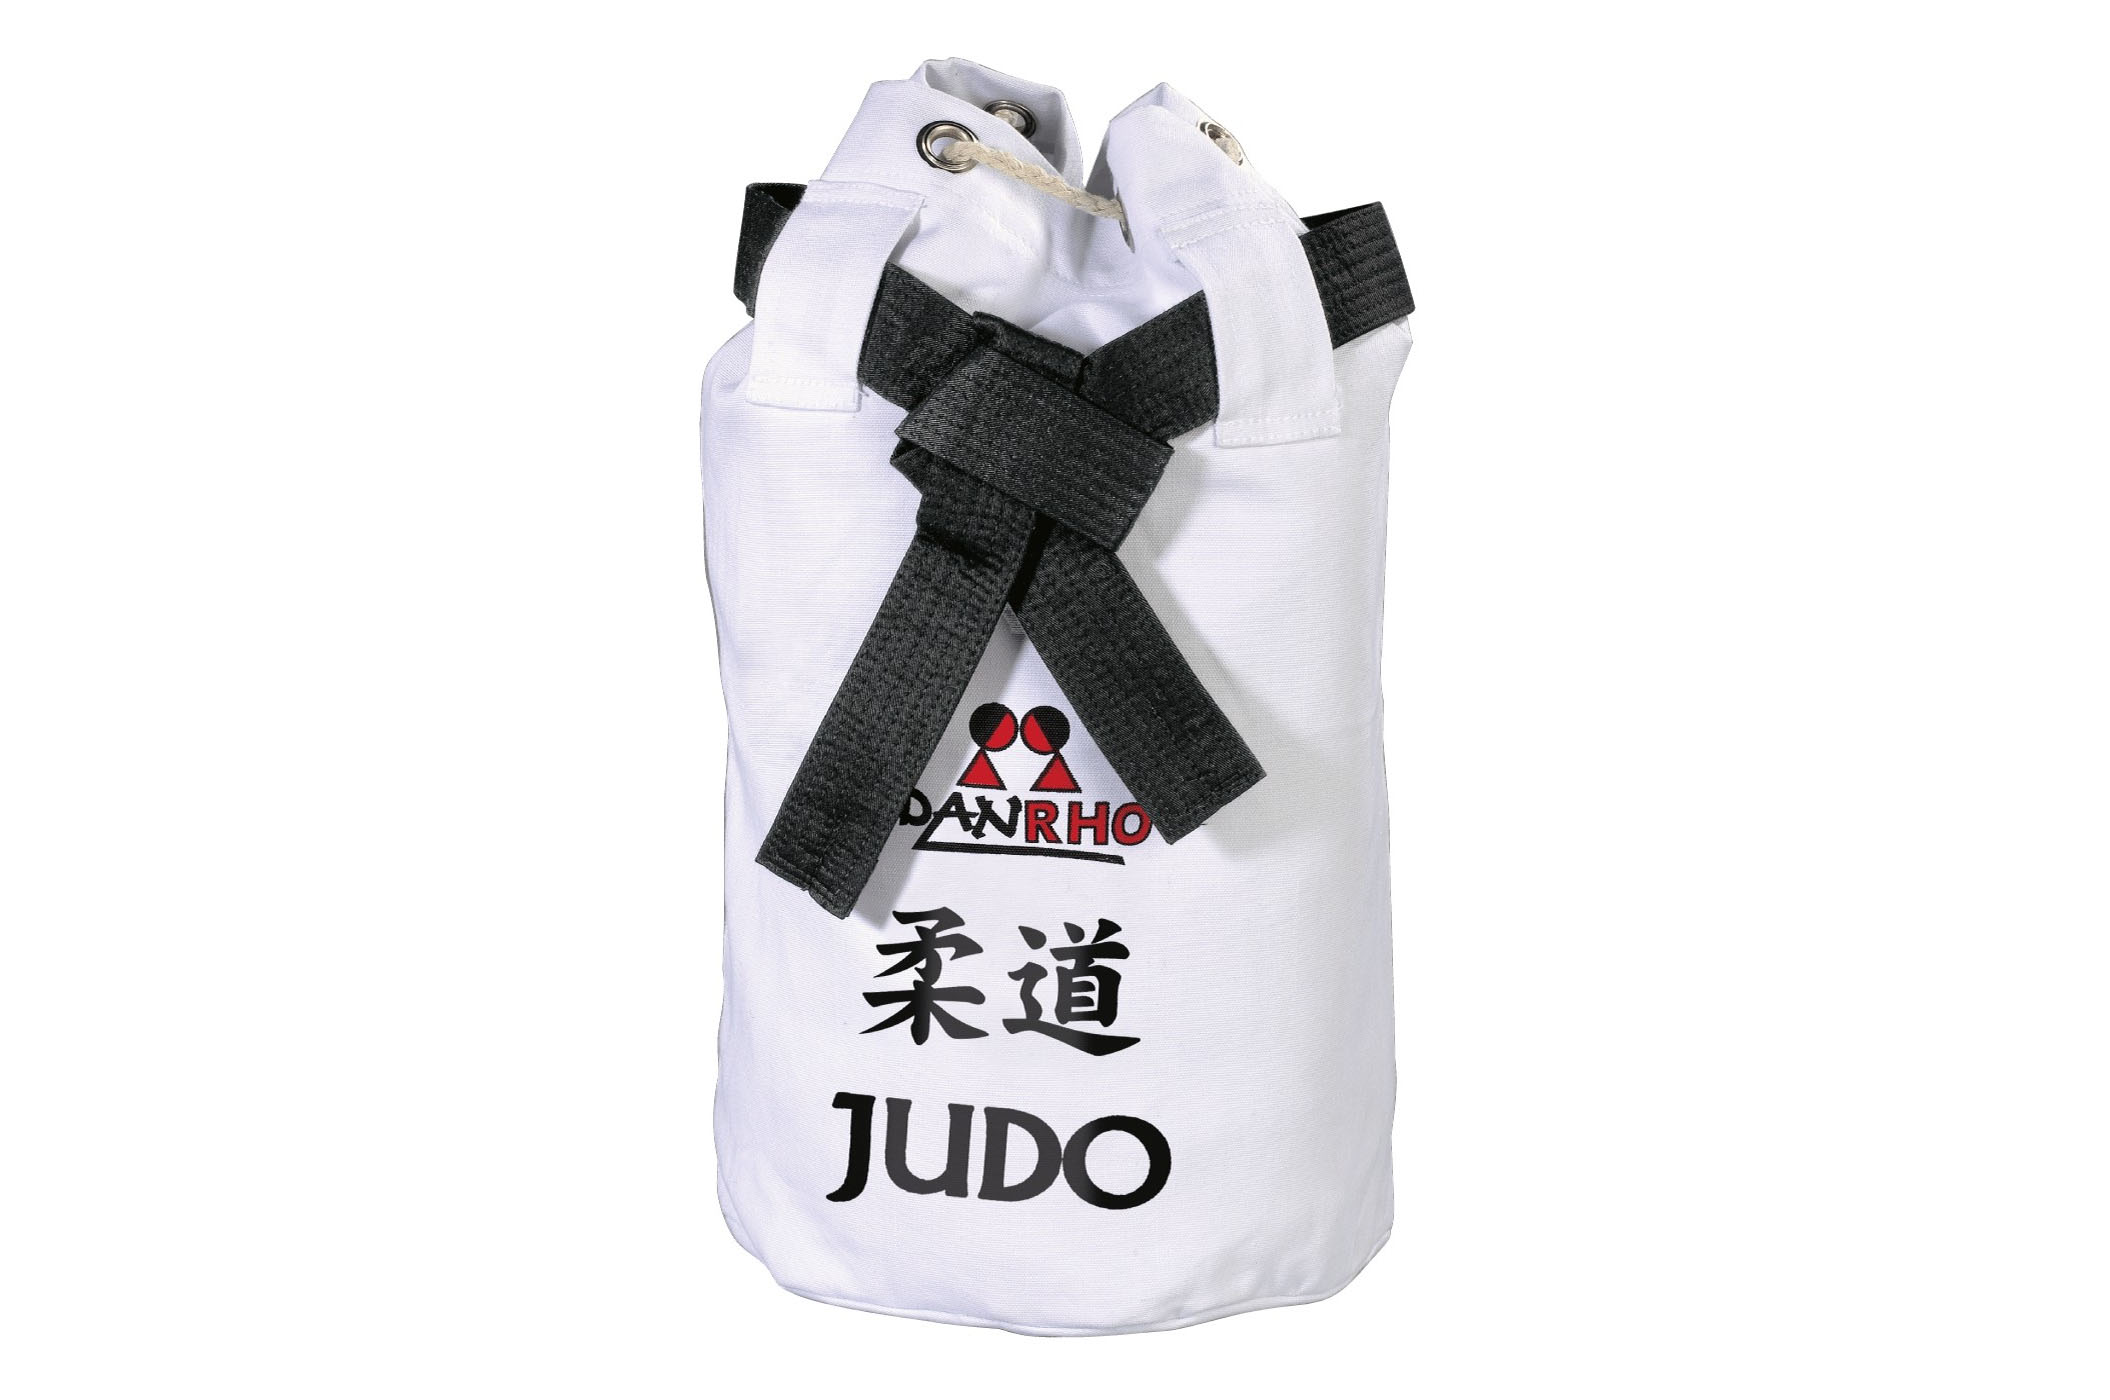 DanRho Dojo-Line Judo-Gi 